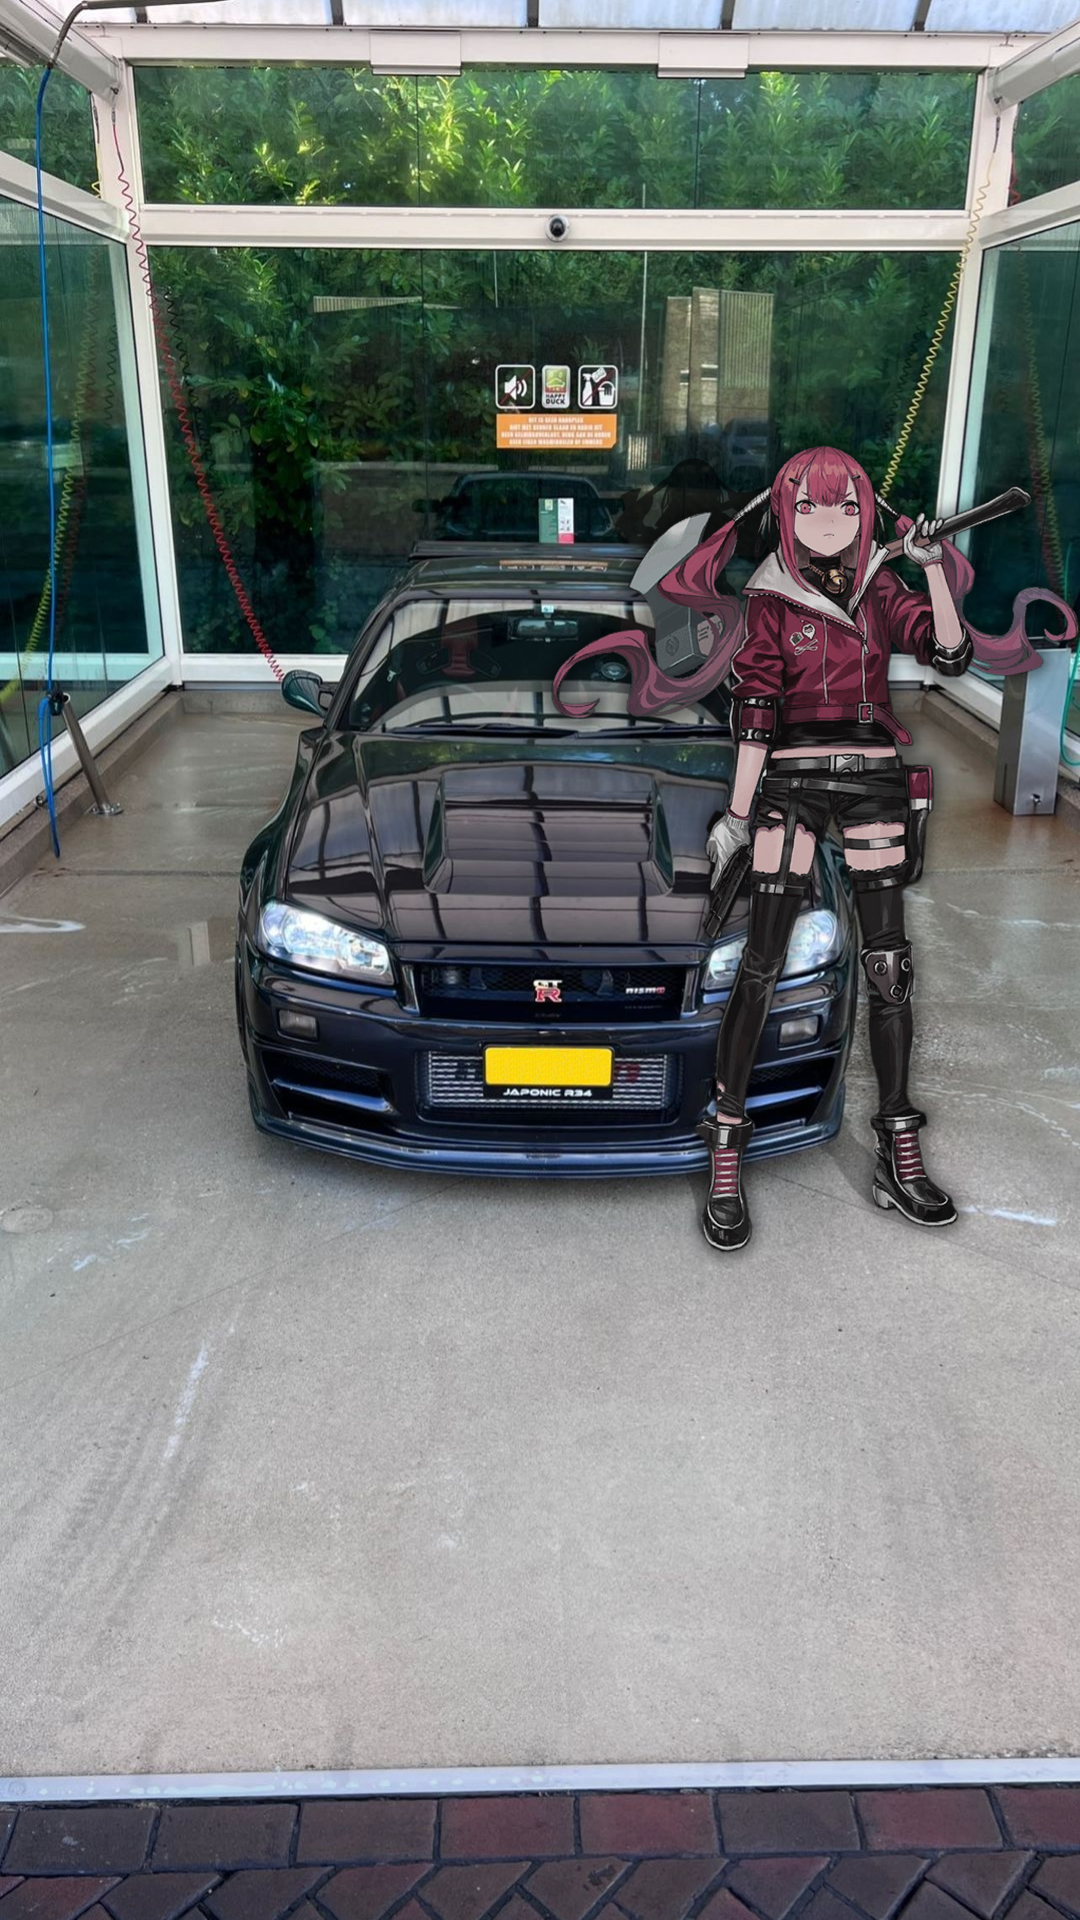 Anime 1080x1920 anime girls Japanese cars jdmxanime car animeirl